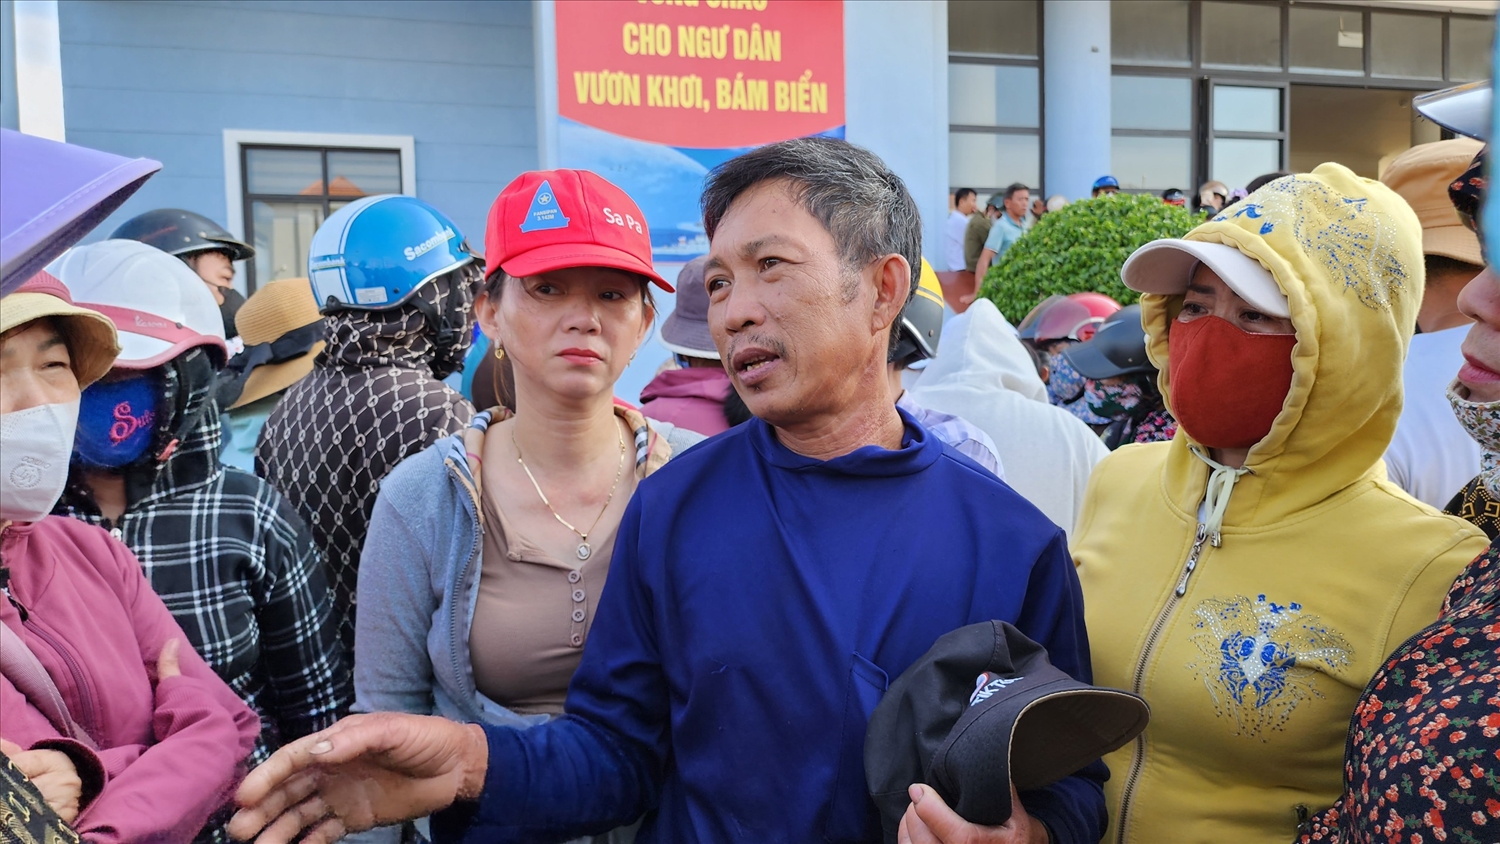 Ngư dân Huỳnh Văn Khởi kể lại phút giây sinh tử khi tàu chìm